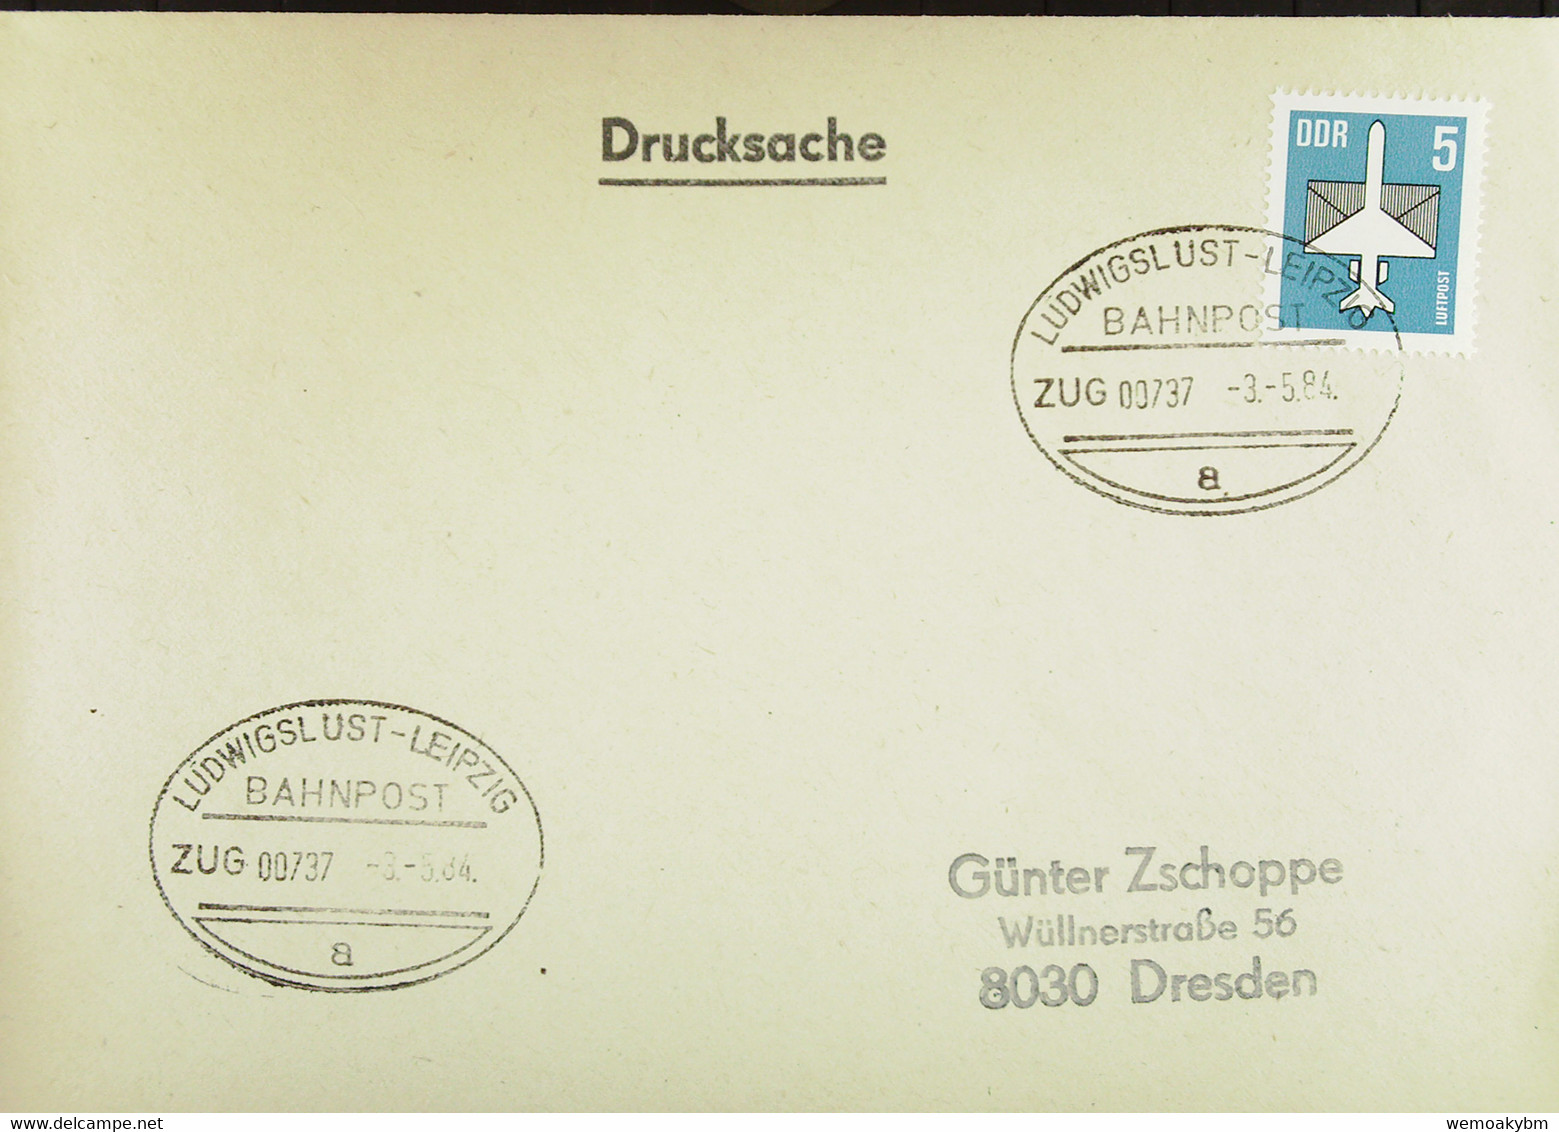 DDR: Ds-Brief Mit Bahnpost-Stempel "LUDWIGSLUST-LEIPZIG ZUG 00737" Vom 3.5.84 Mit 5 Pfg Flugpostmarke Knr: 2831 - Maschinenstempel (EMA)